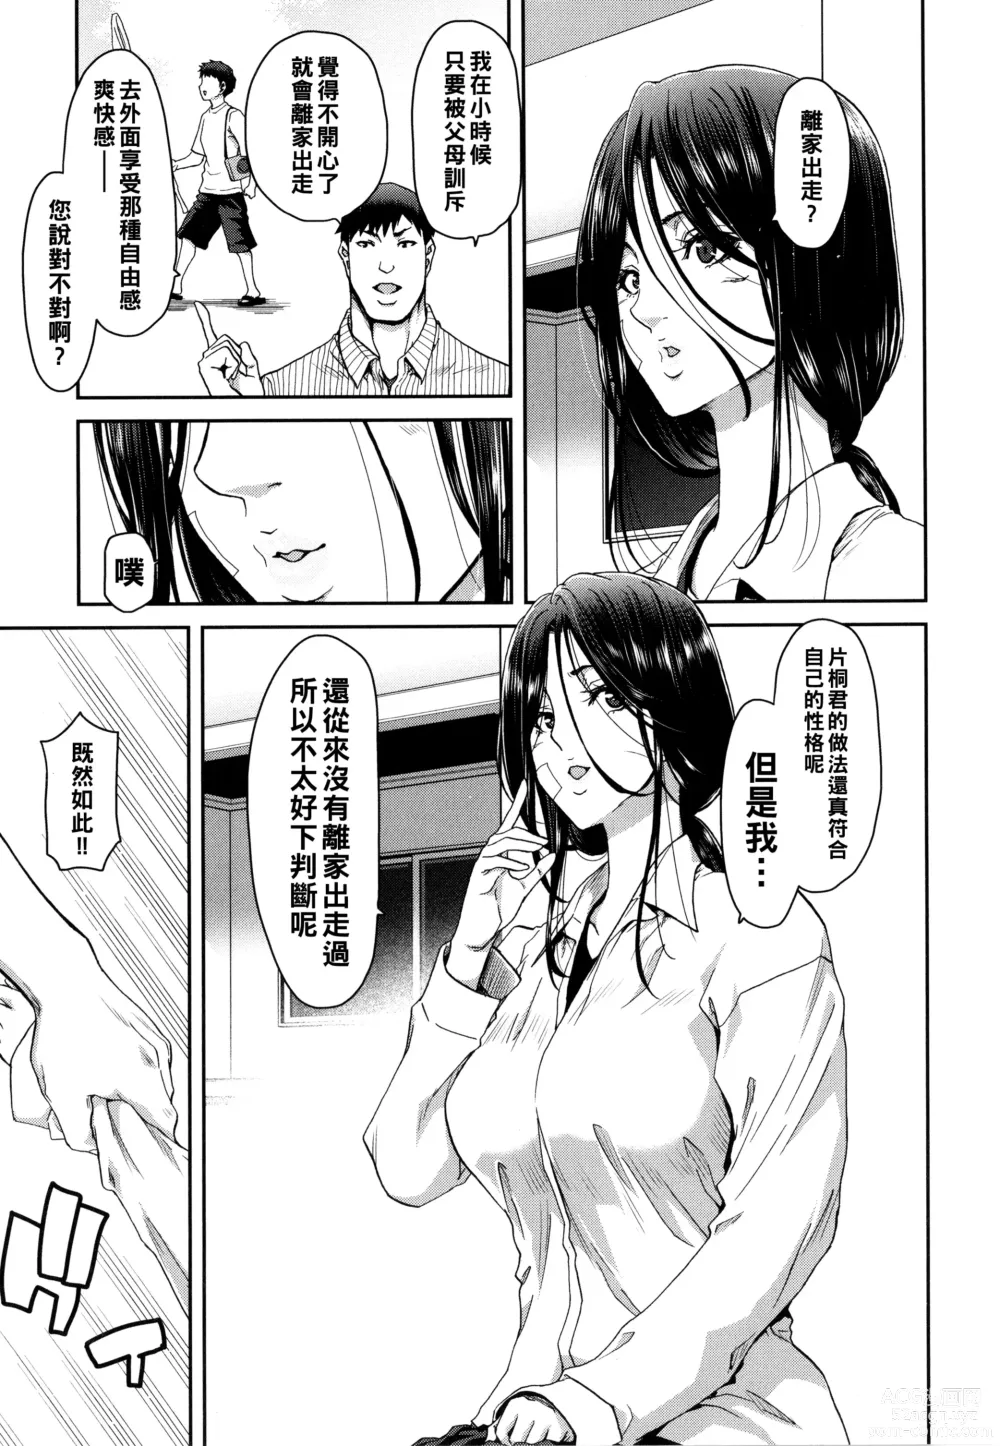 Page 11 of manga Iede Onna o Hirottara - When I picked up a runaway girl. + Melonbooks Gentei Tokuten   Otona no Iede Gojitsudan Sono Ato no Arisa to Akira